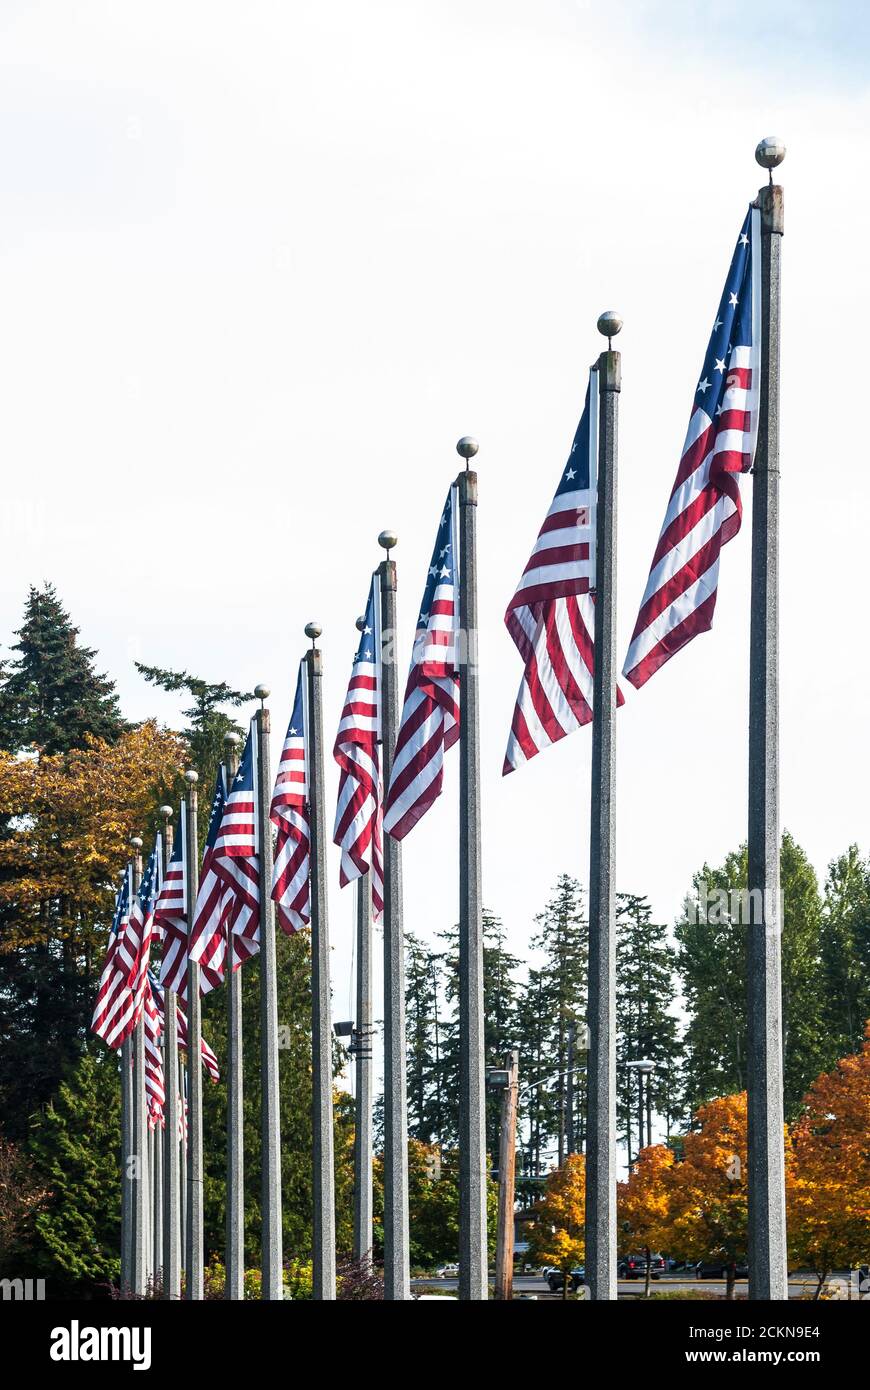 Banderas en fila en un parque en Lynnwood, Washington Fotografía de stock -  Alamy